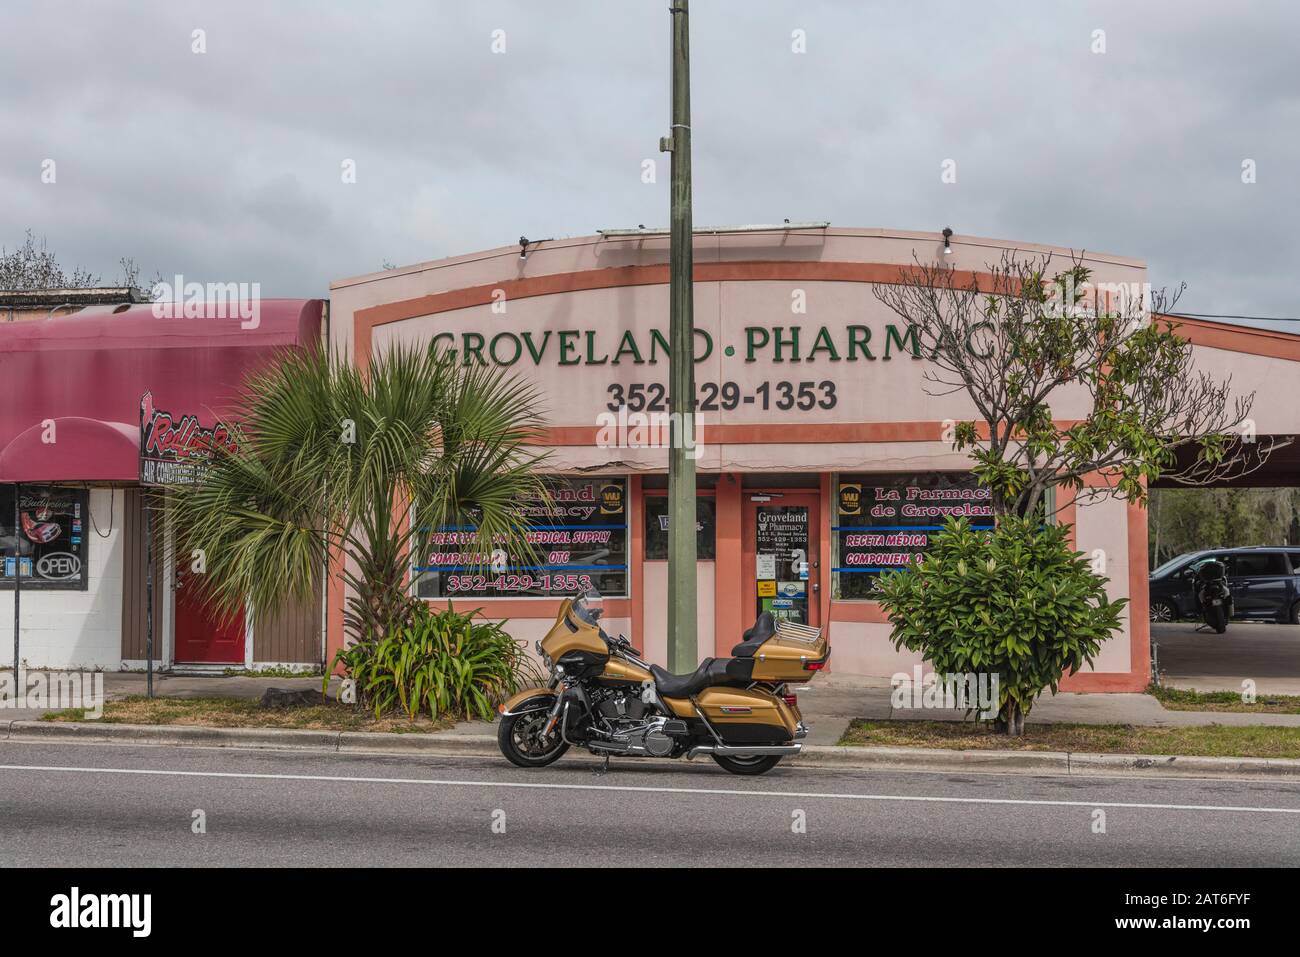 Groveland Pharmacy Storefront, Good Neighbor Pharmacy Groveland Florida USA Stock Photo